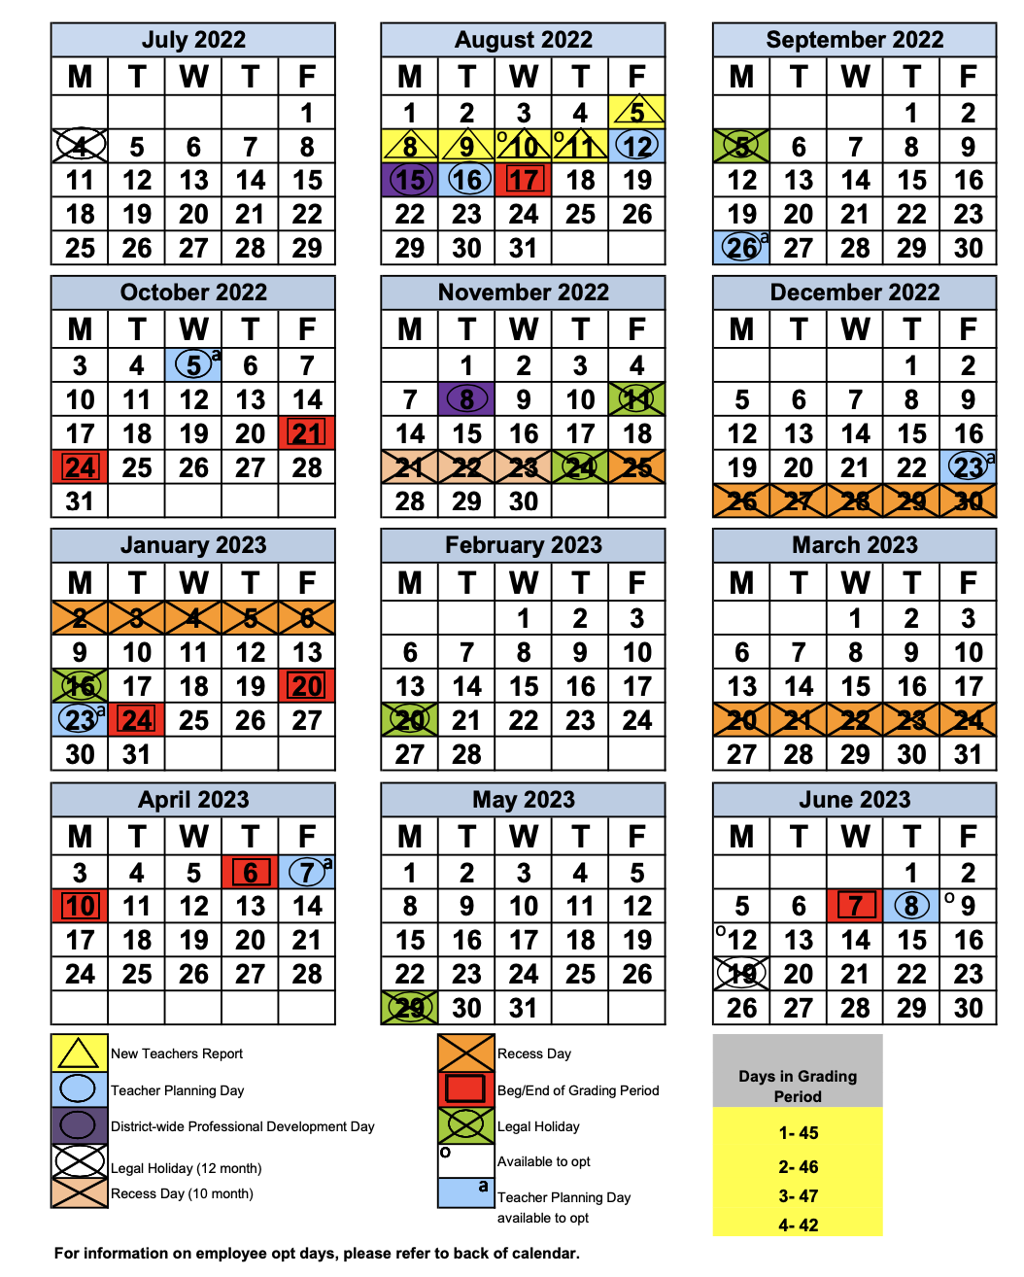 Cusd 2023 2024 School Calendar Image to u